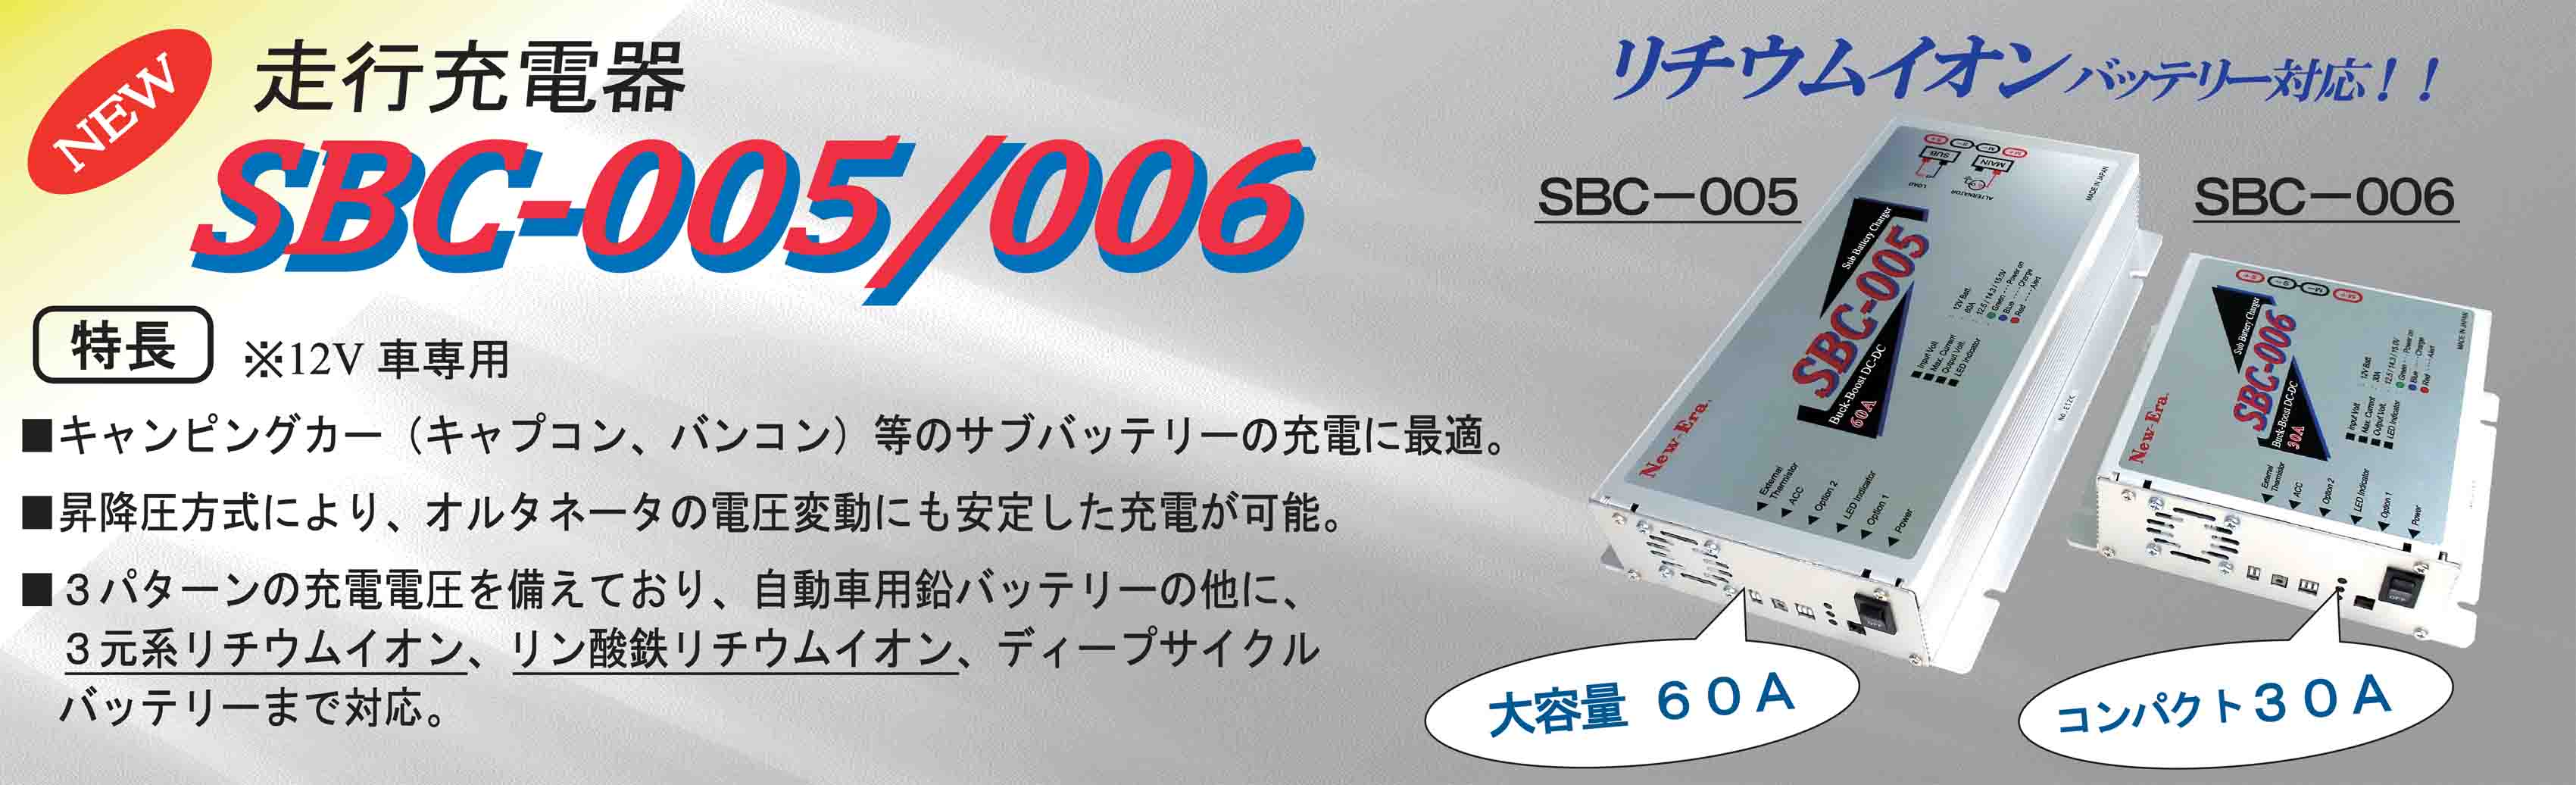 SBC-005/006